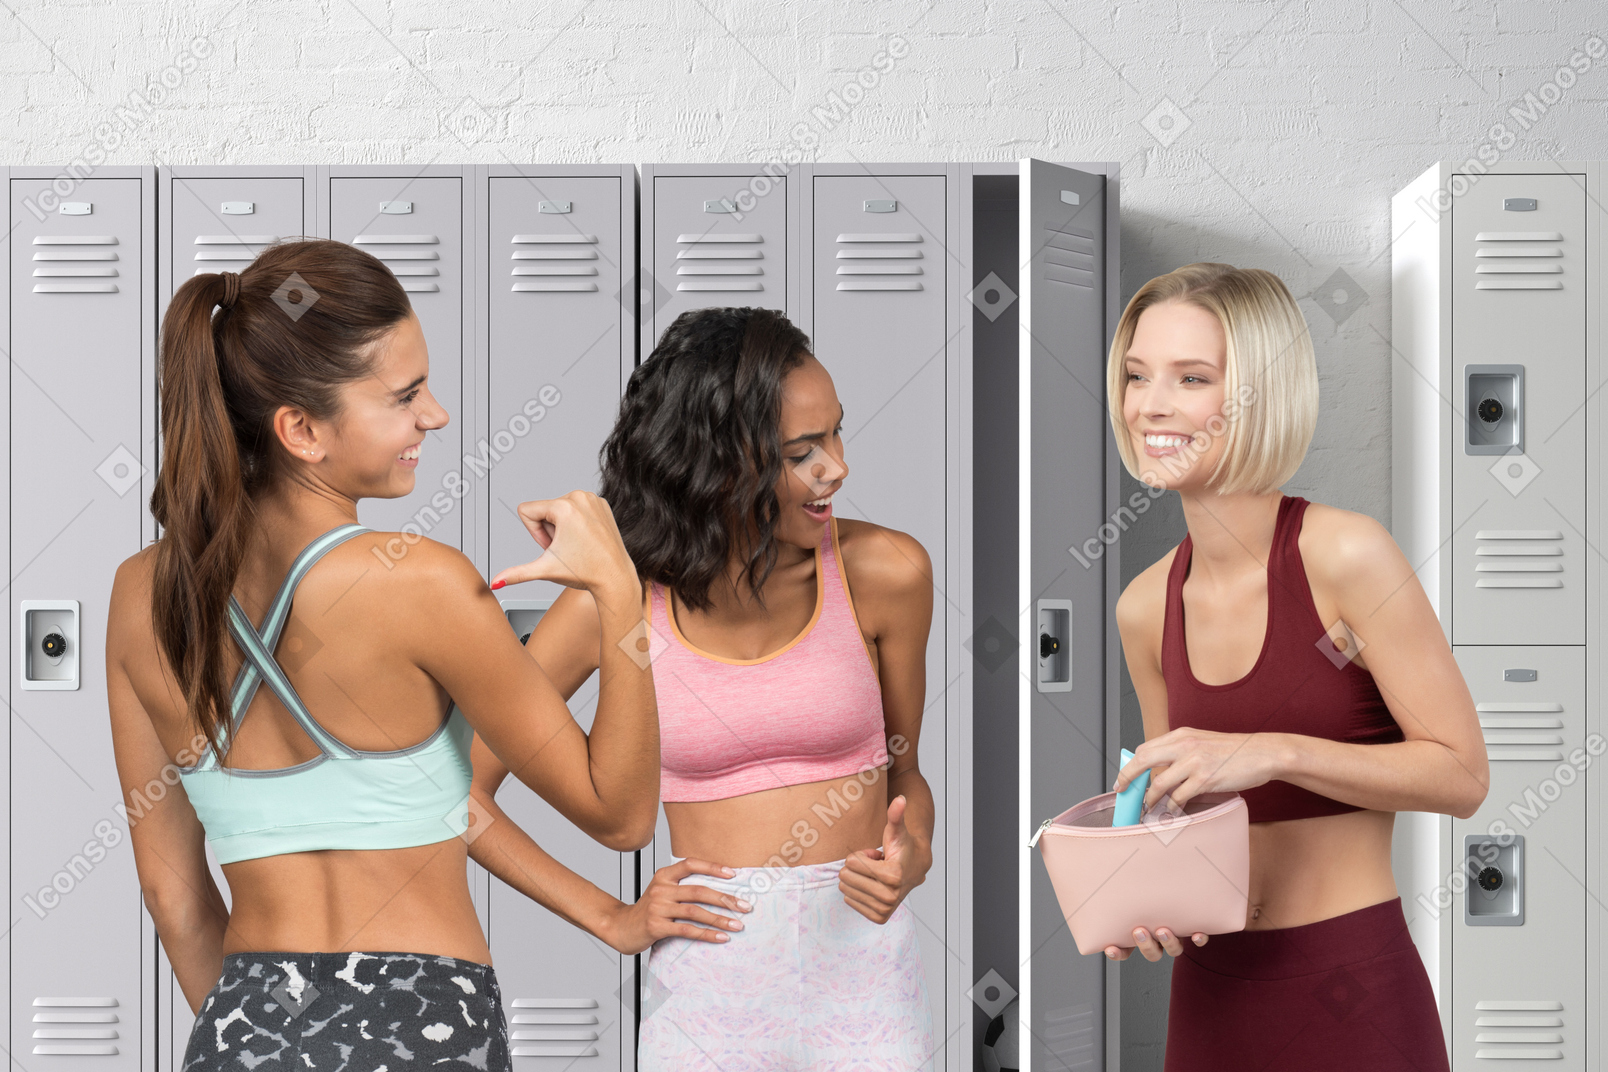 Women in sportswear in a locker room